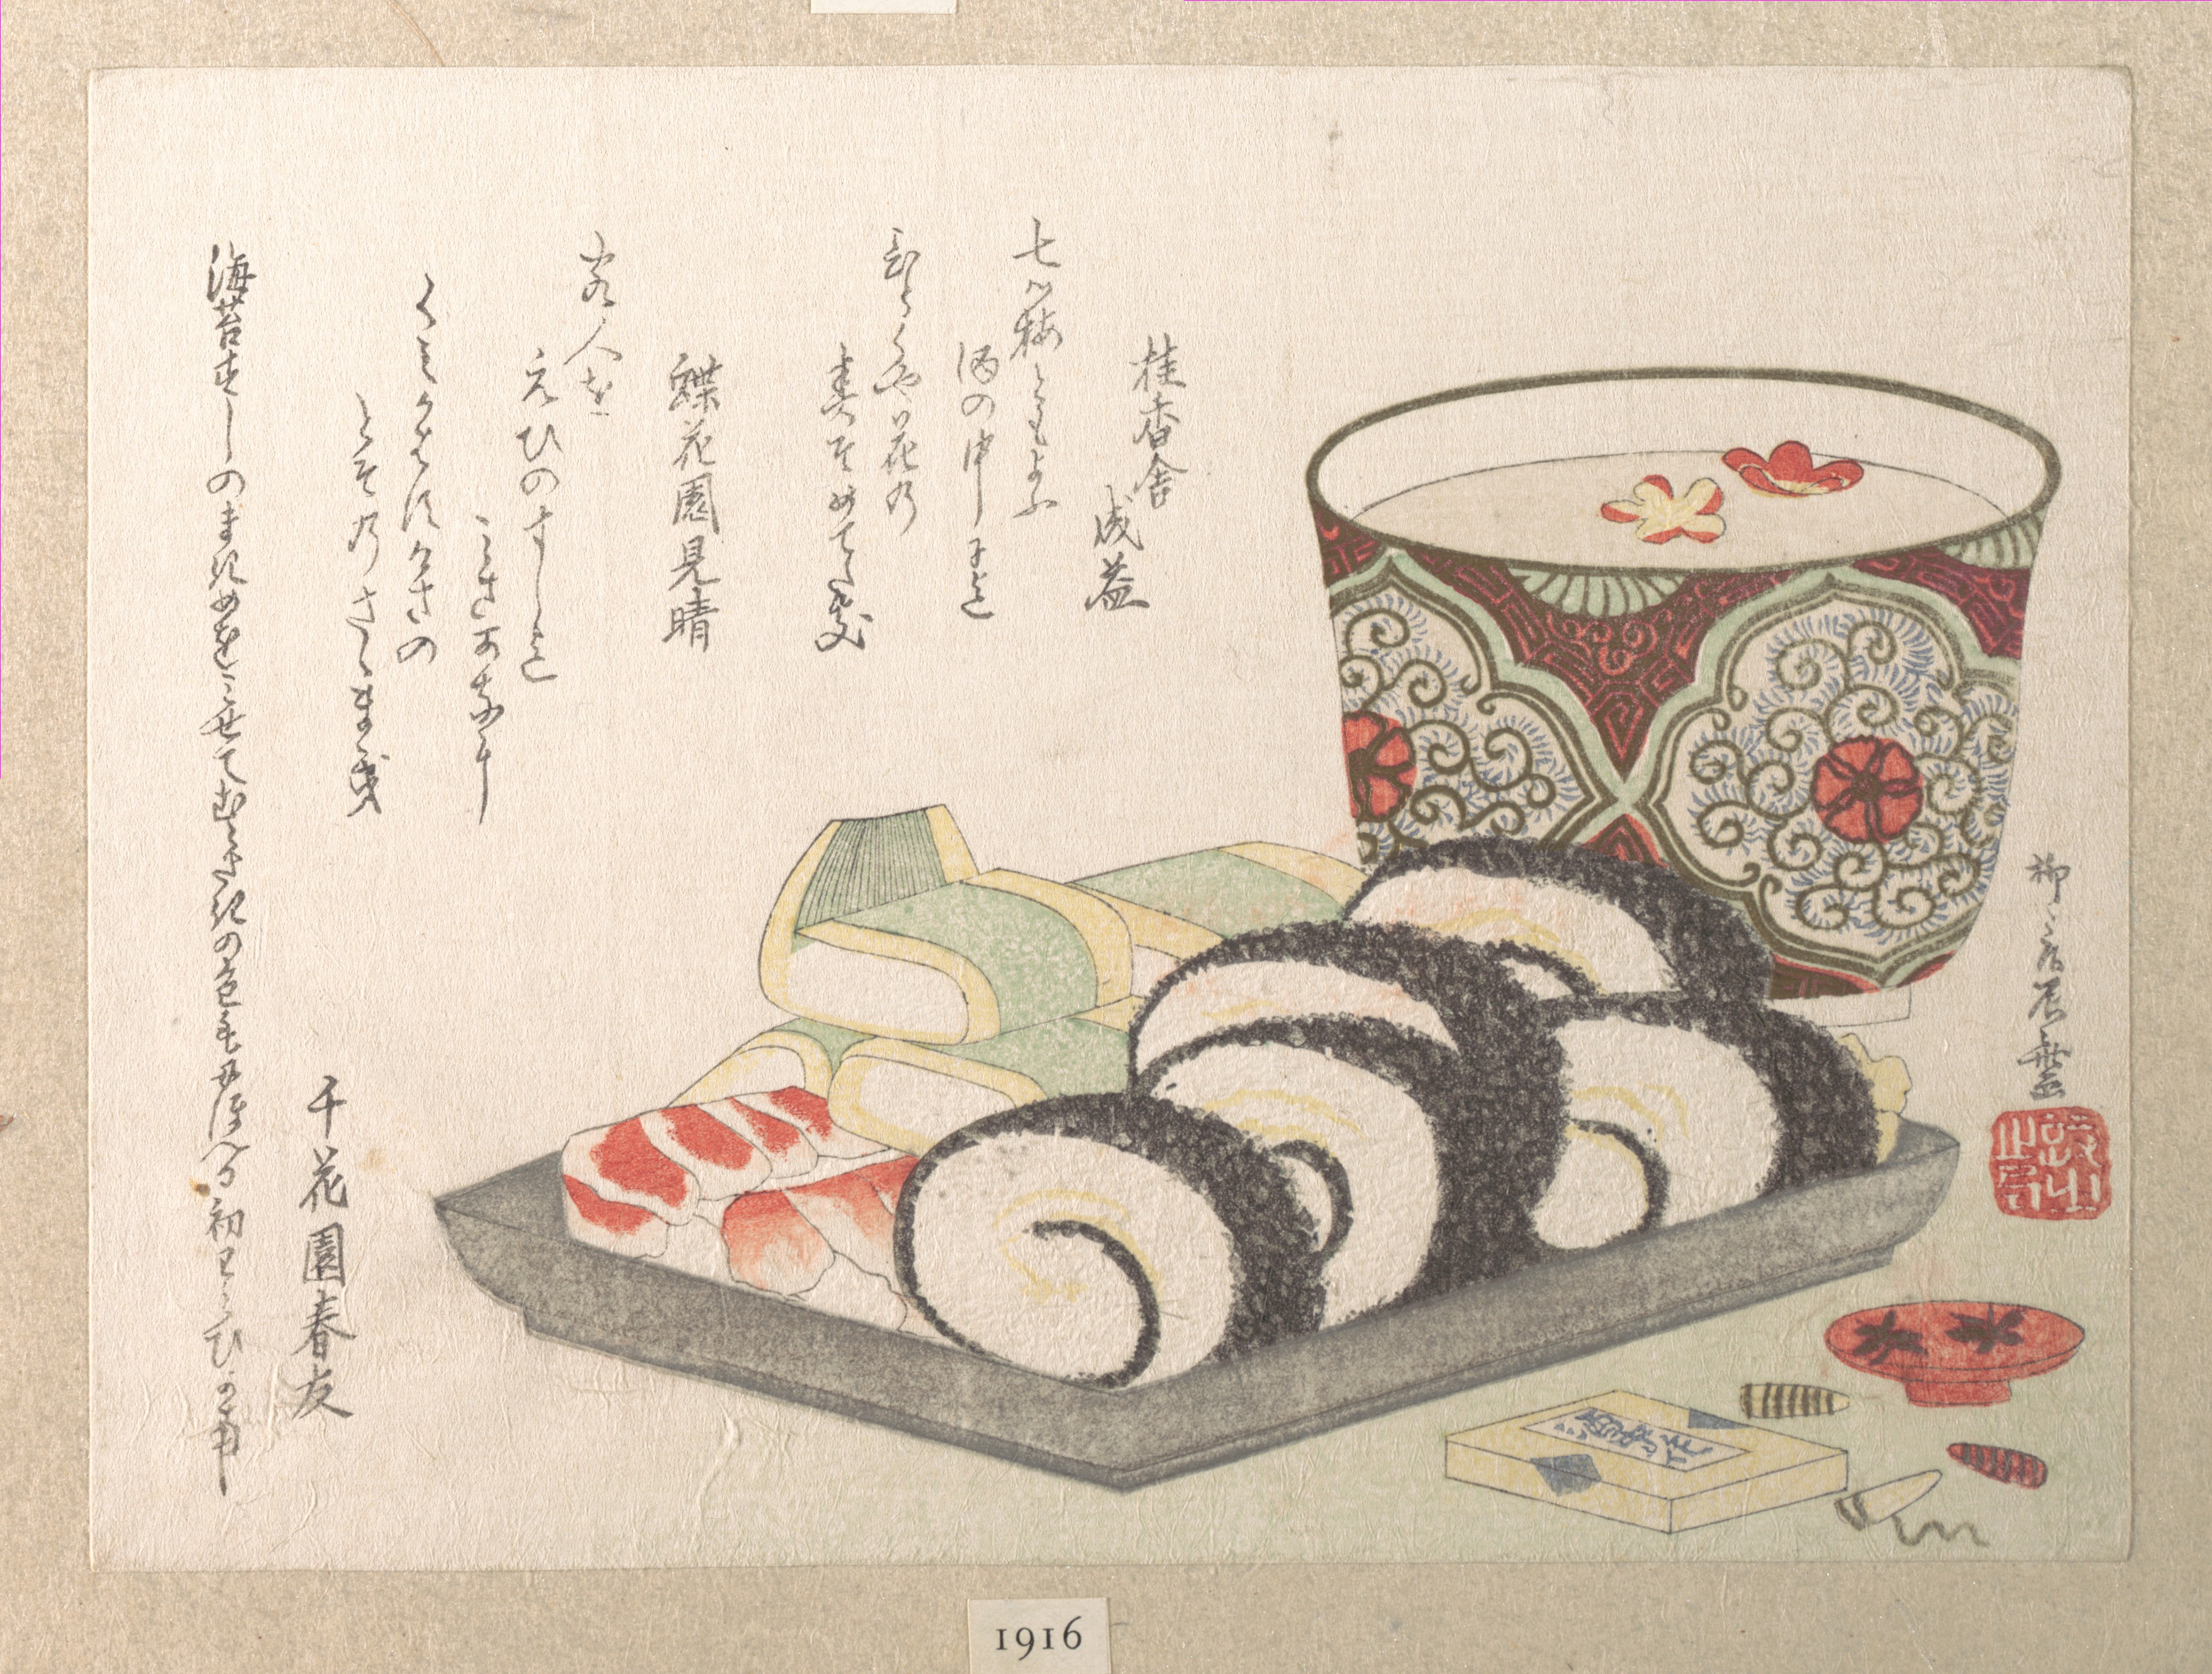 壽司和清酒 by Ryūryūkyo Shinsai - 約 1810 年 - 13.3 x 18.4 釐米 